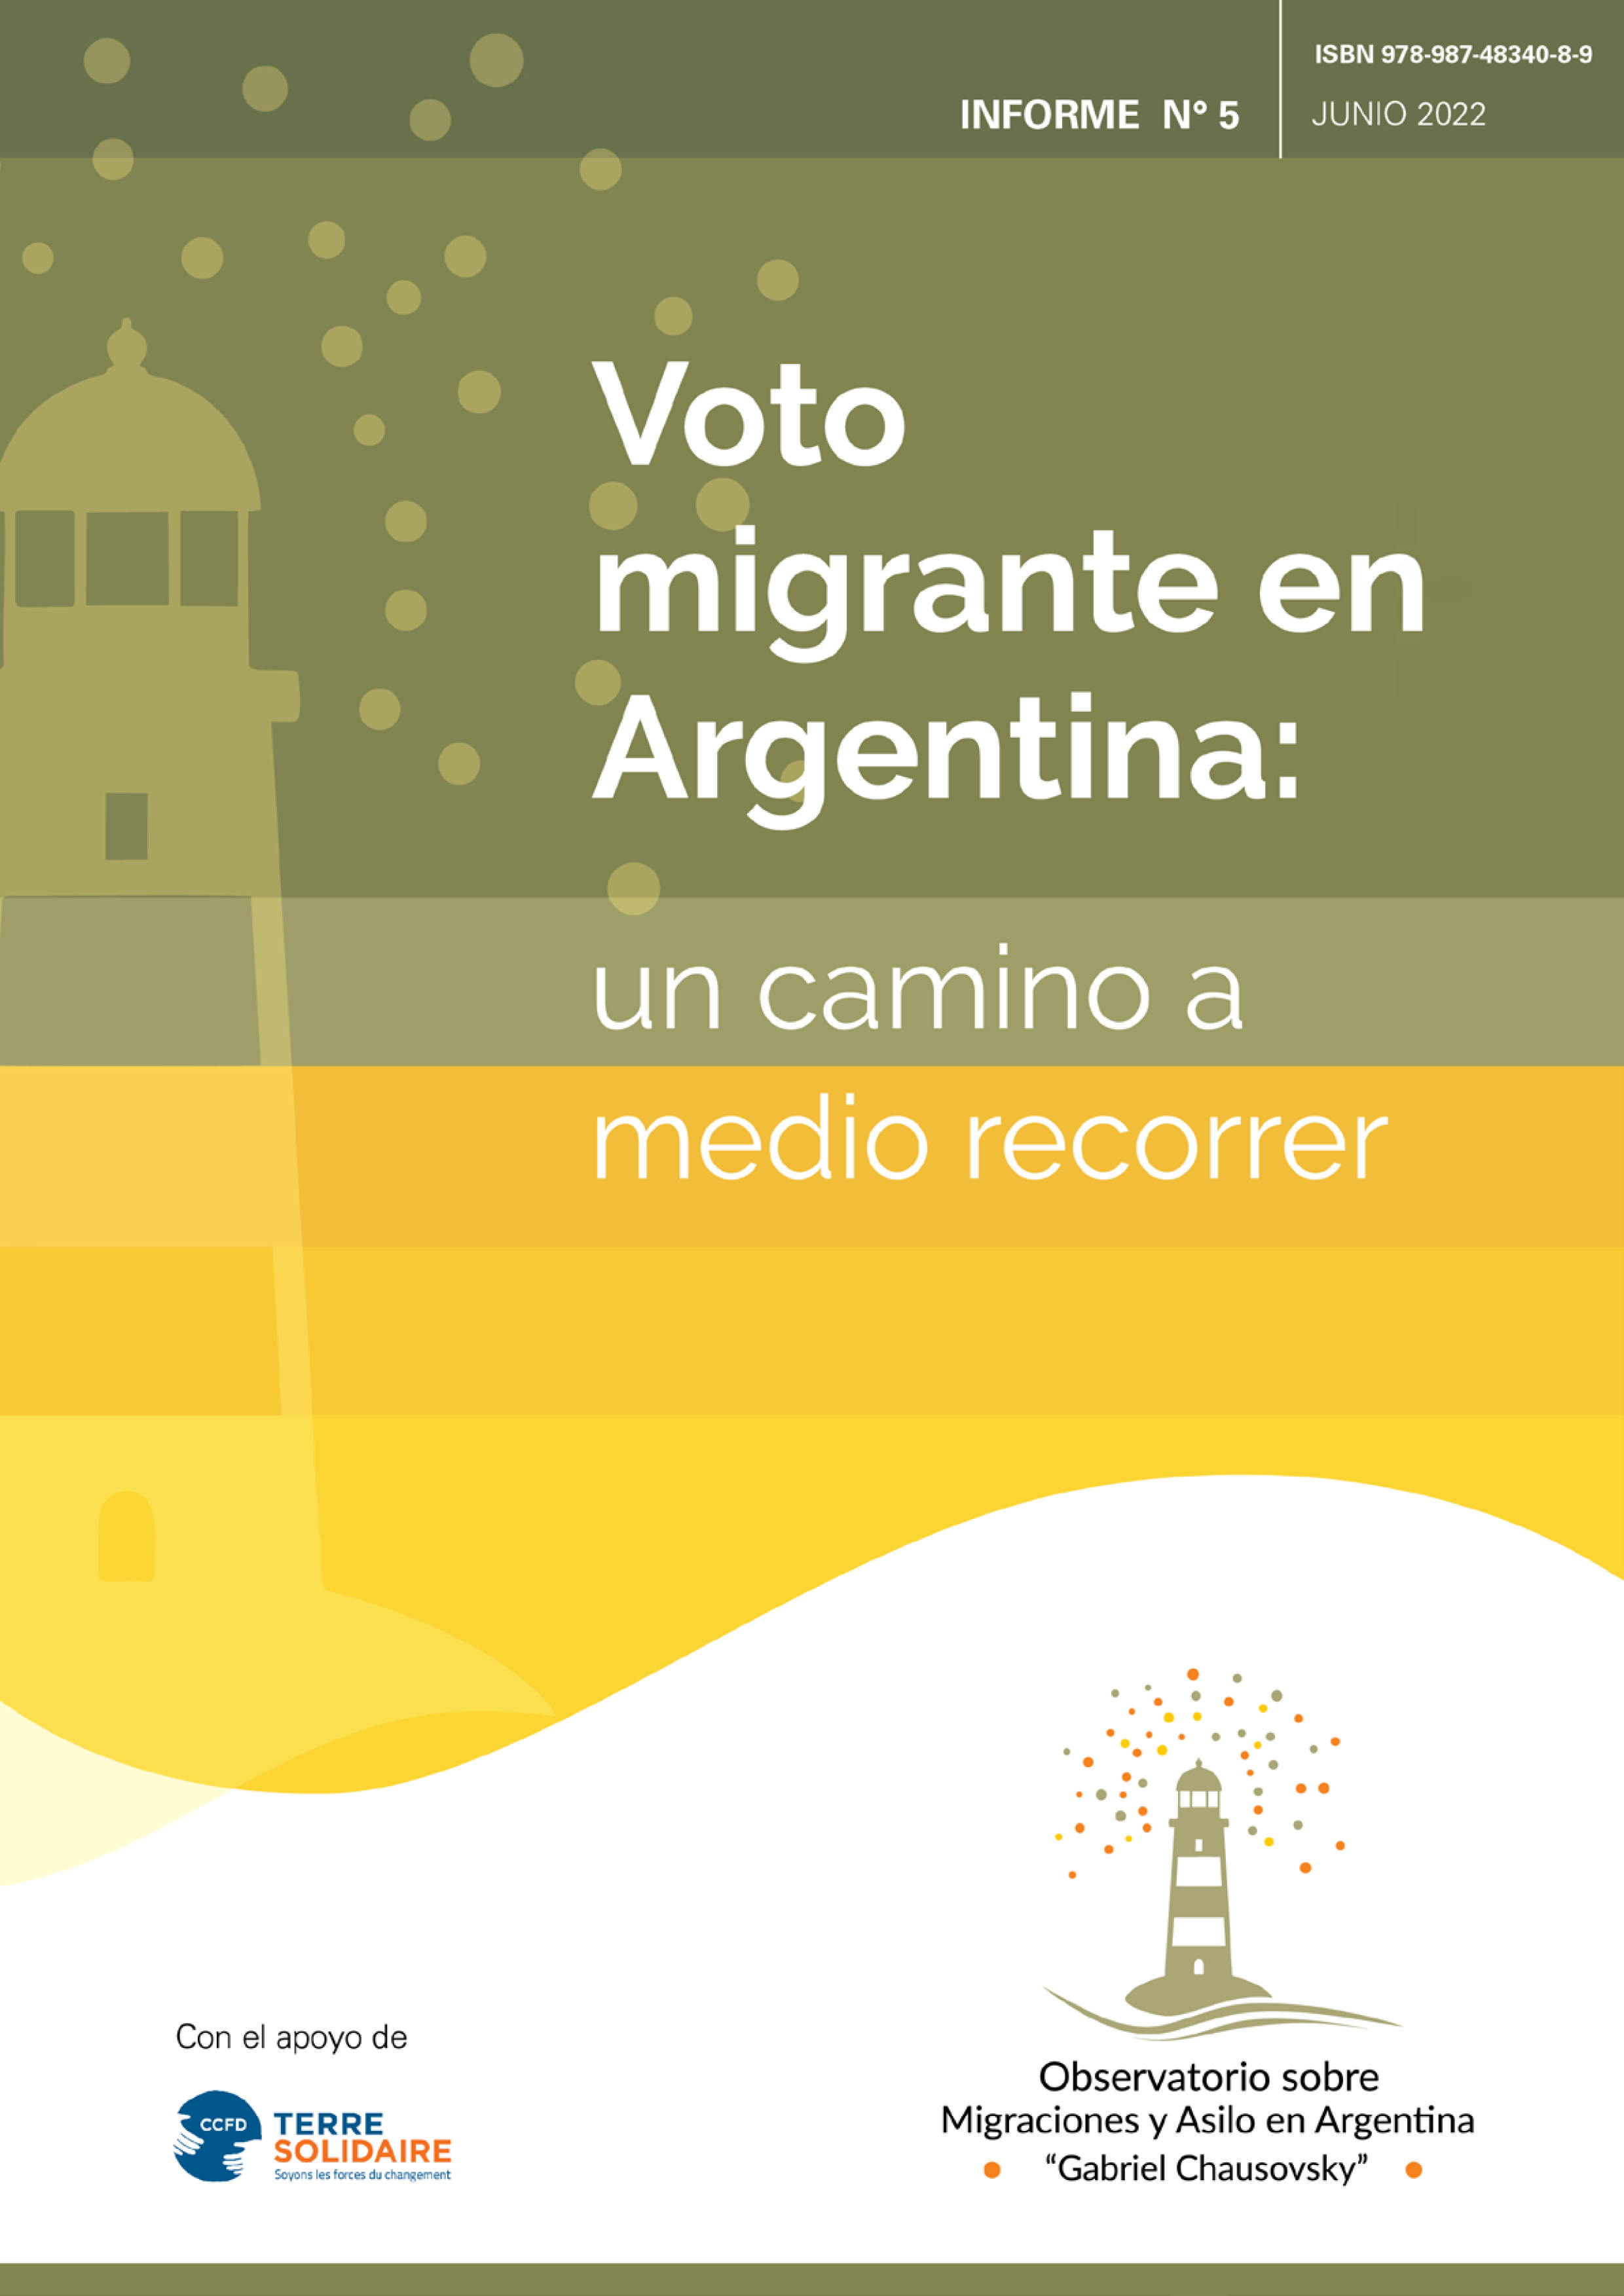 Voto migrante en Argentina: un camino a recorrer